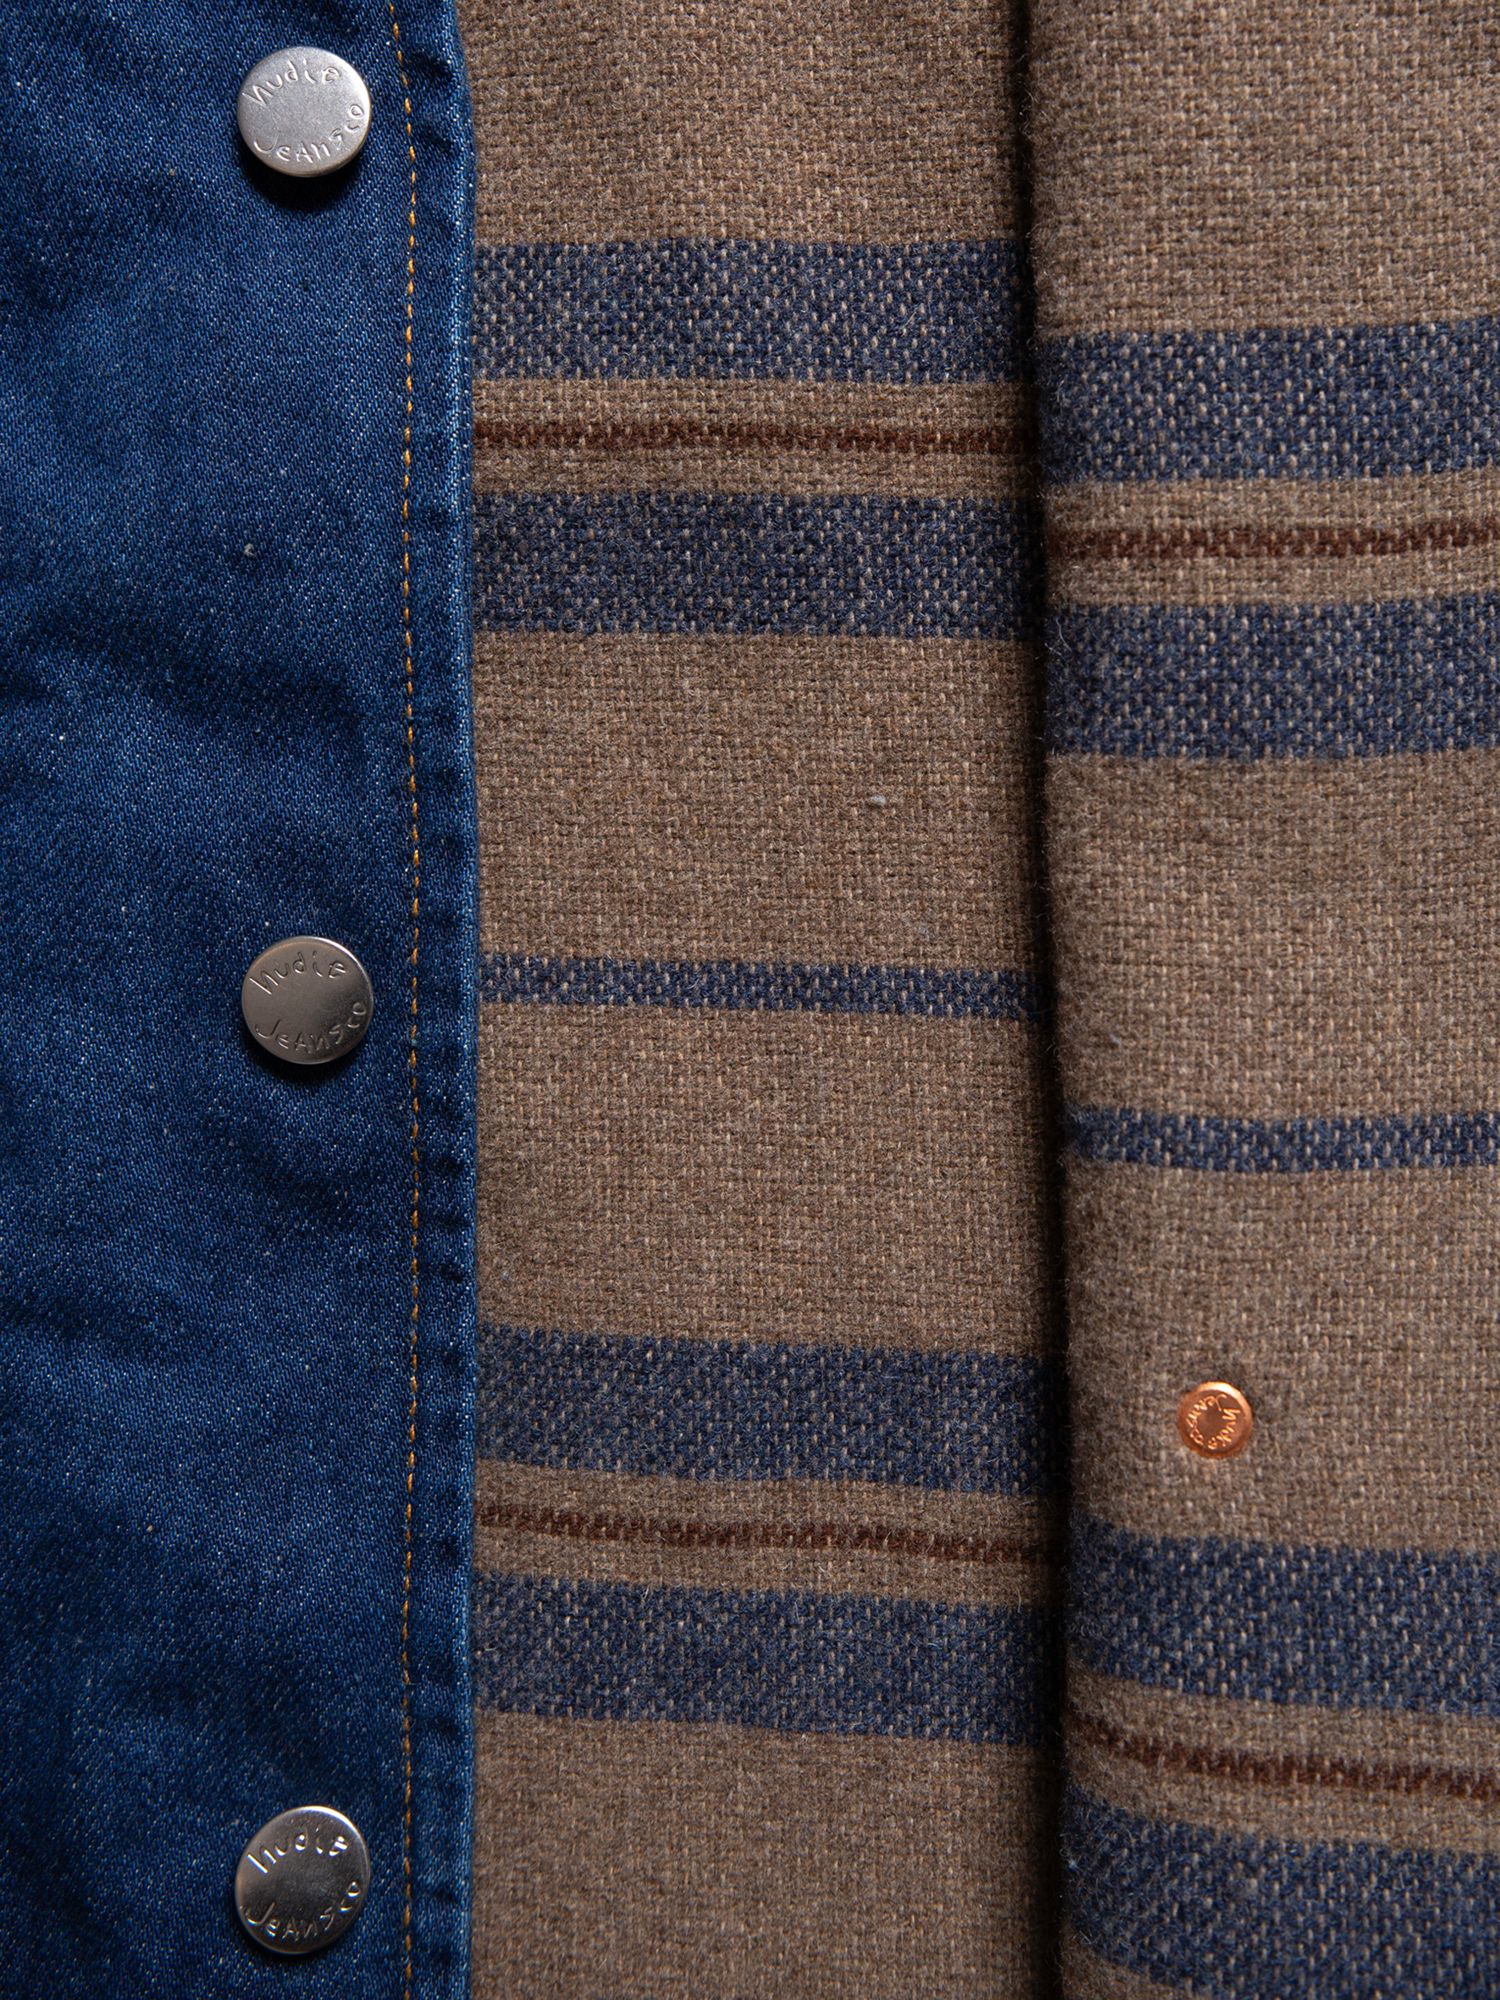 Nudie Jeans Harry Organic Cotton Denim Vest, Blue, XL